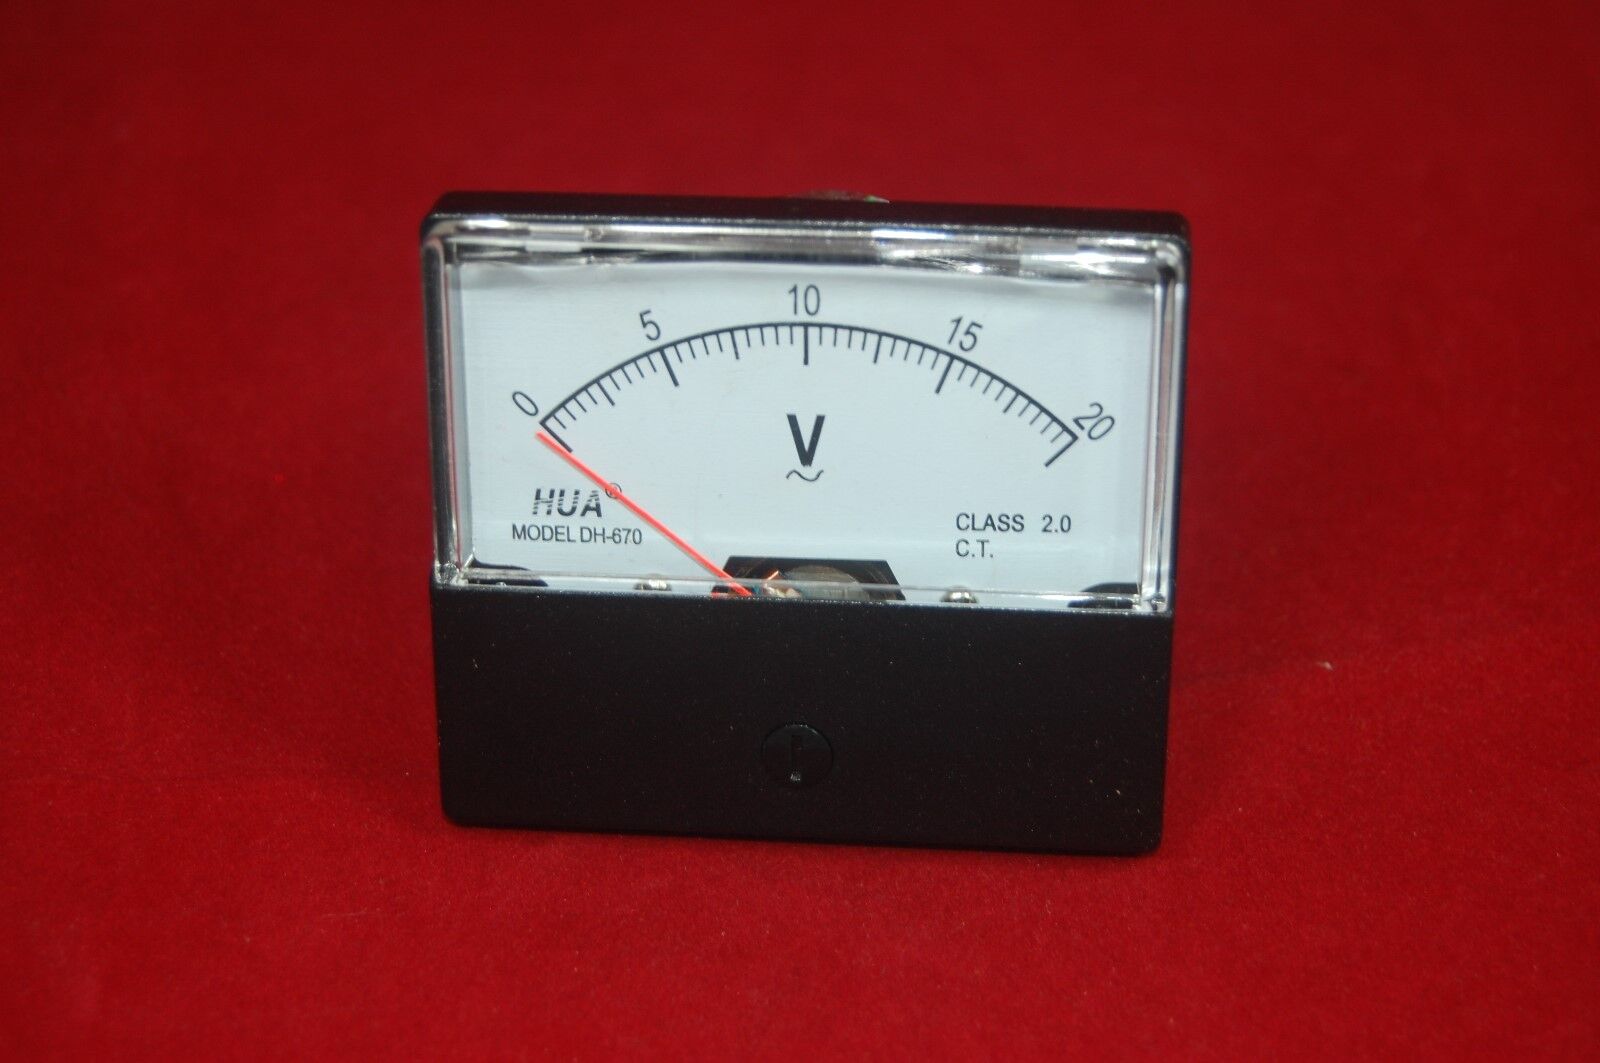 XJF Voltage Testers DC 0-20V Round Analog Dial Panel Meter Voltmeter Gauge